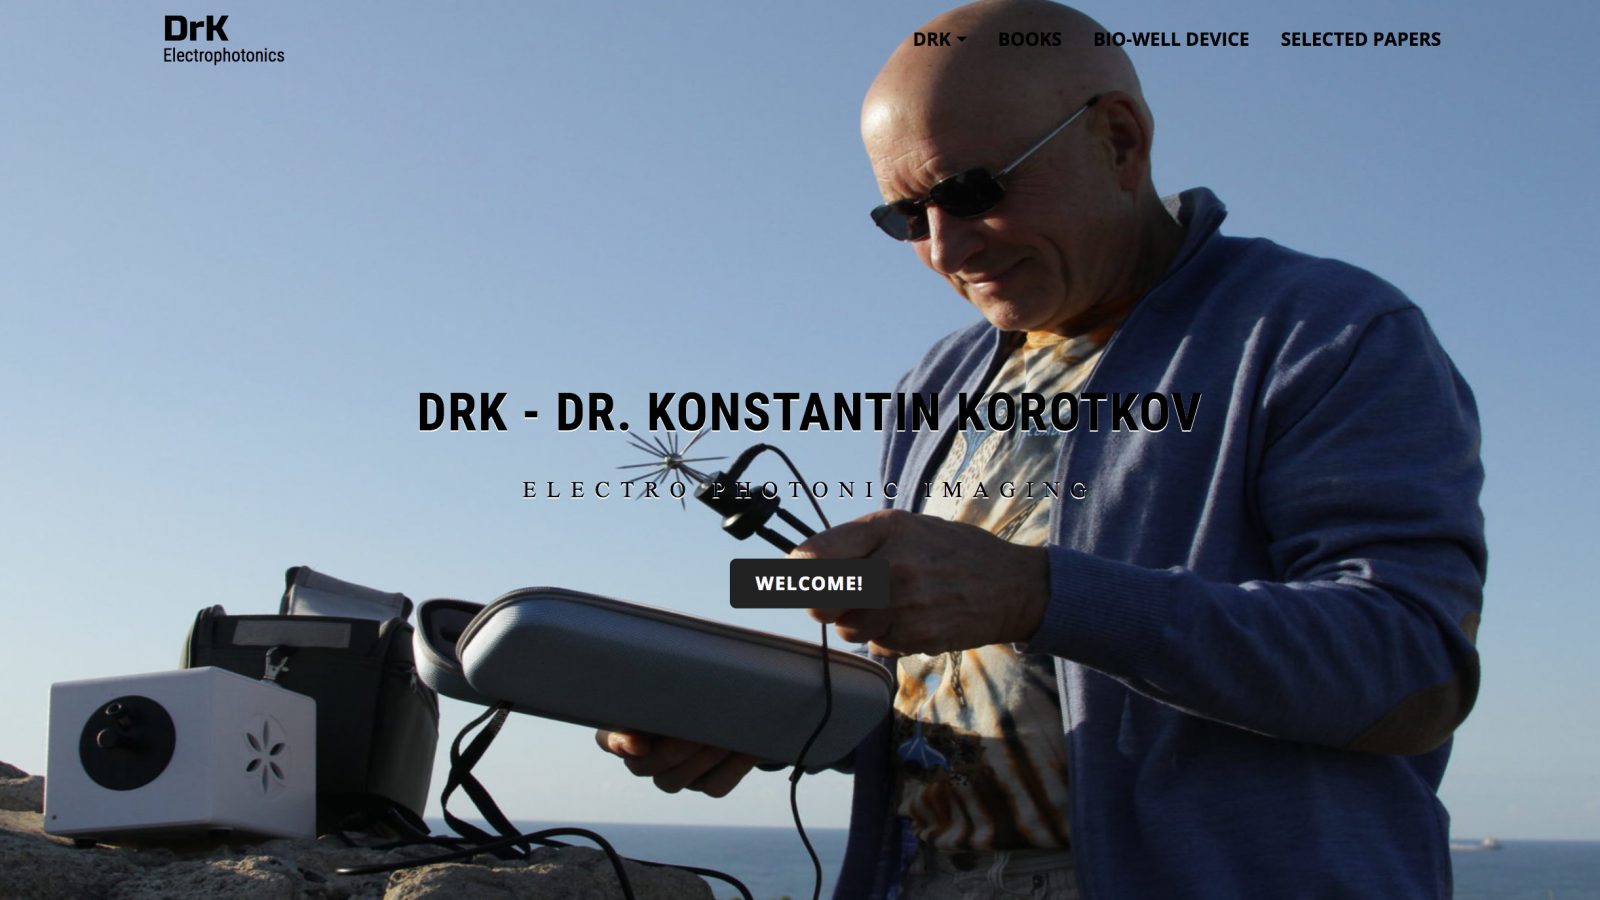 Professor Konstantin Korotkov